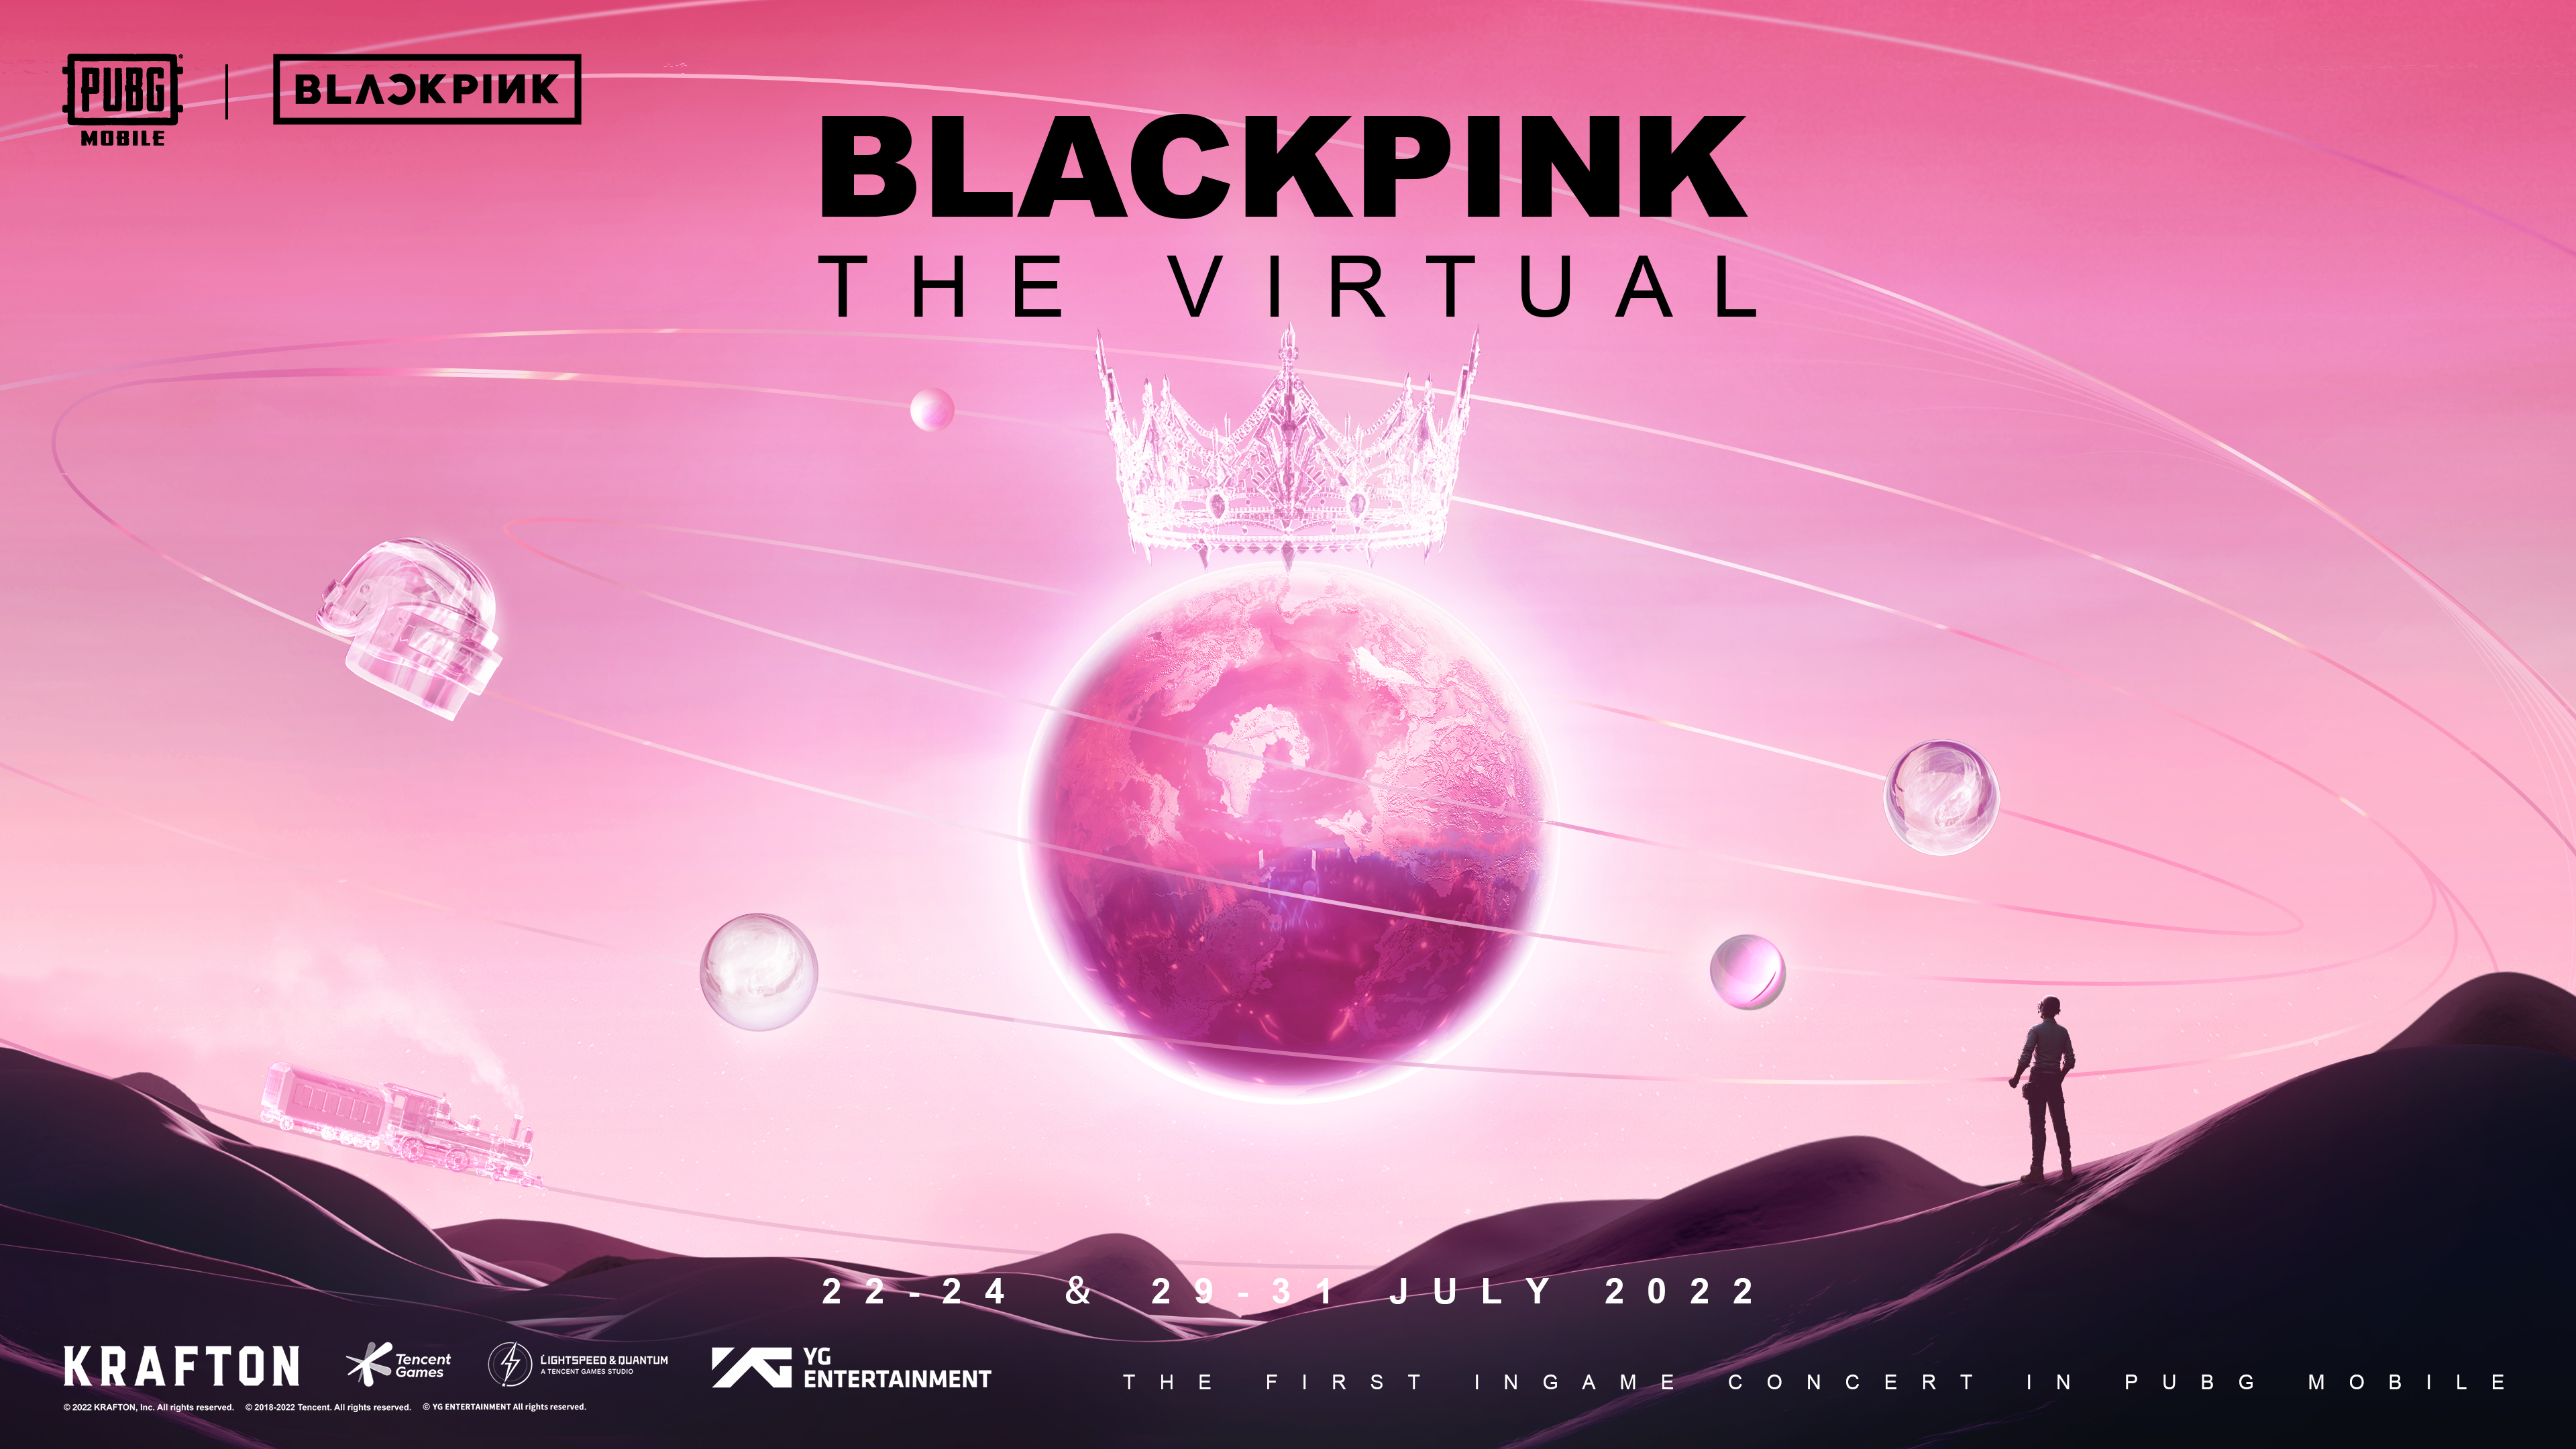 Bareng PUBG, BLACKPINK Gelar Konser Virtual Bulan Ini